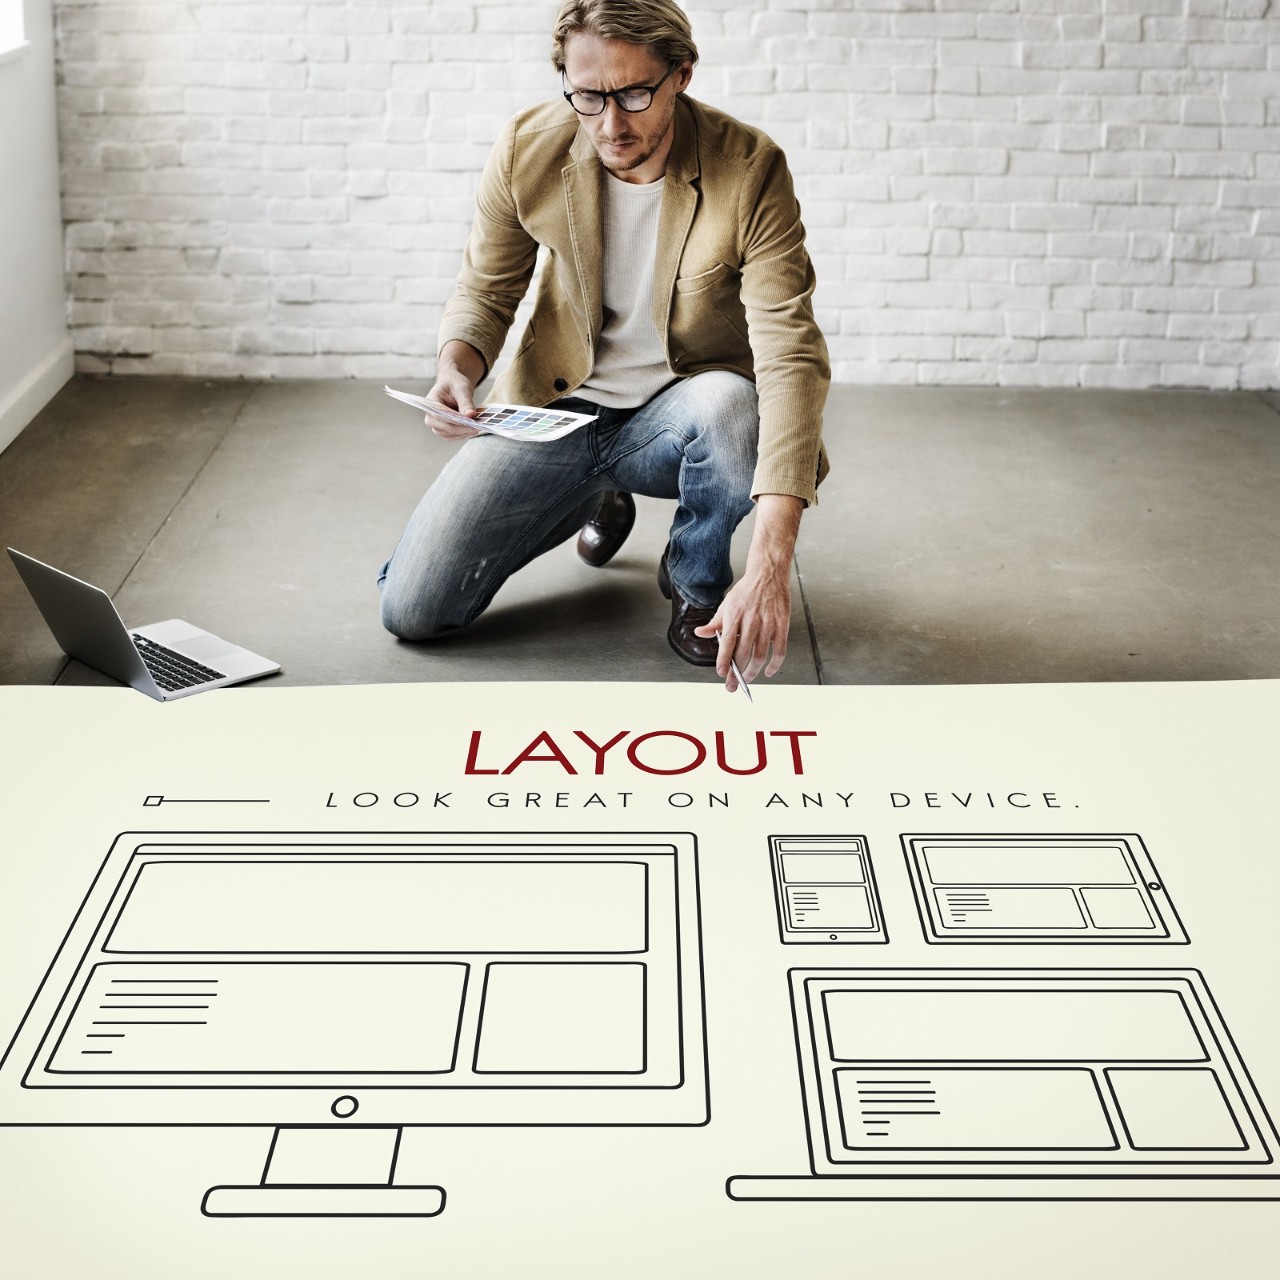 Responsive Design Layout Connection Content Concept